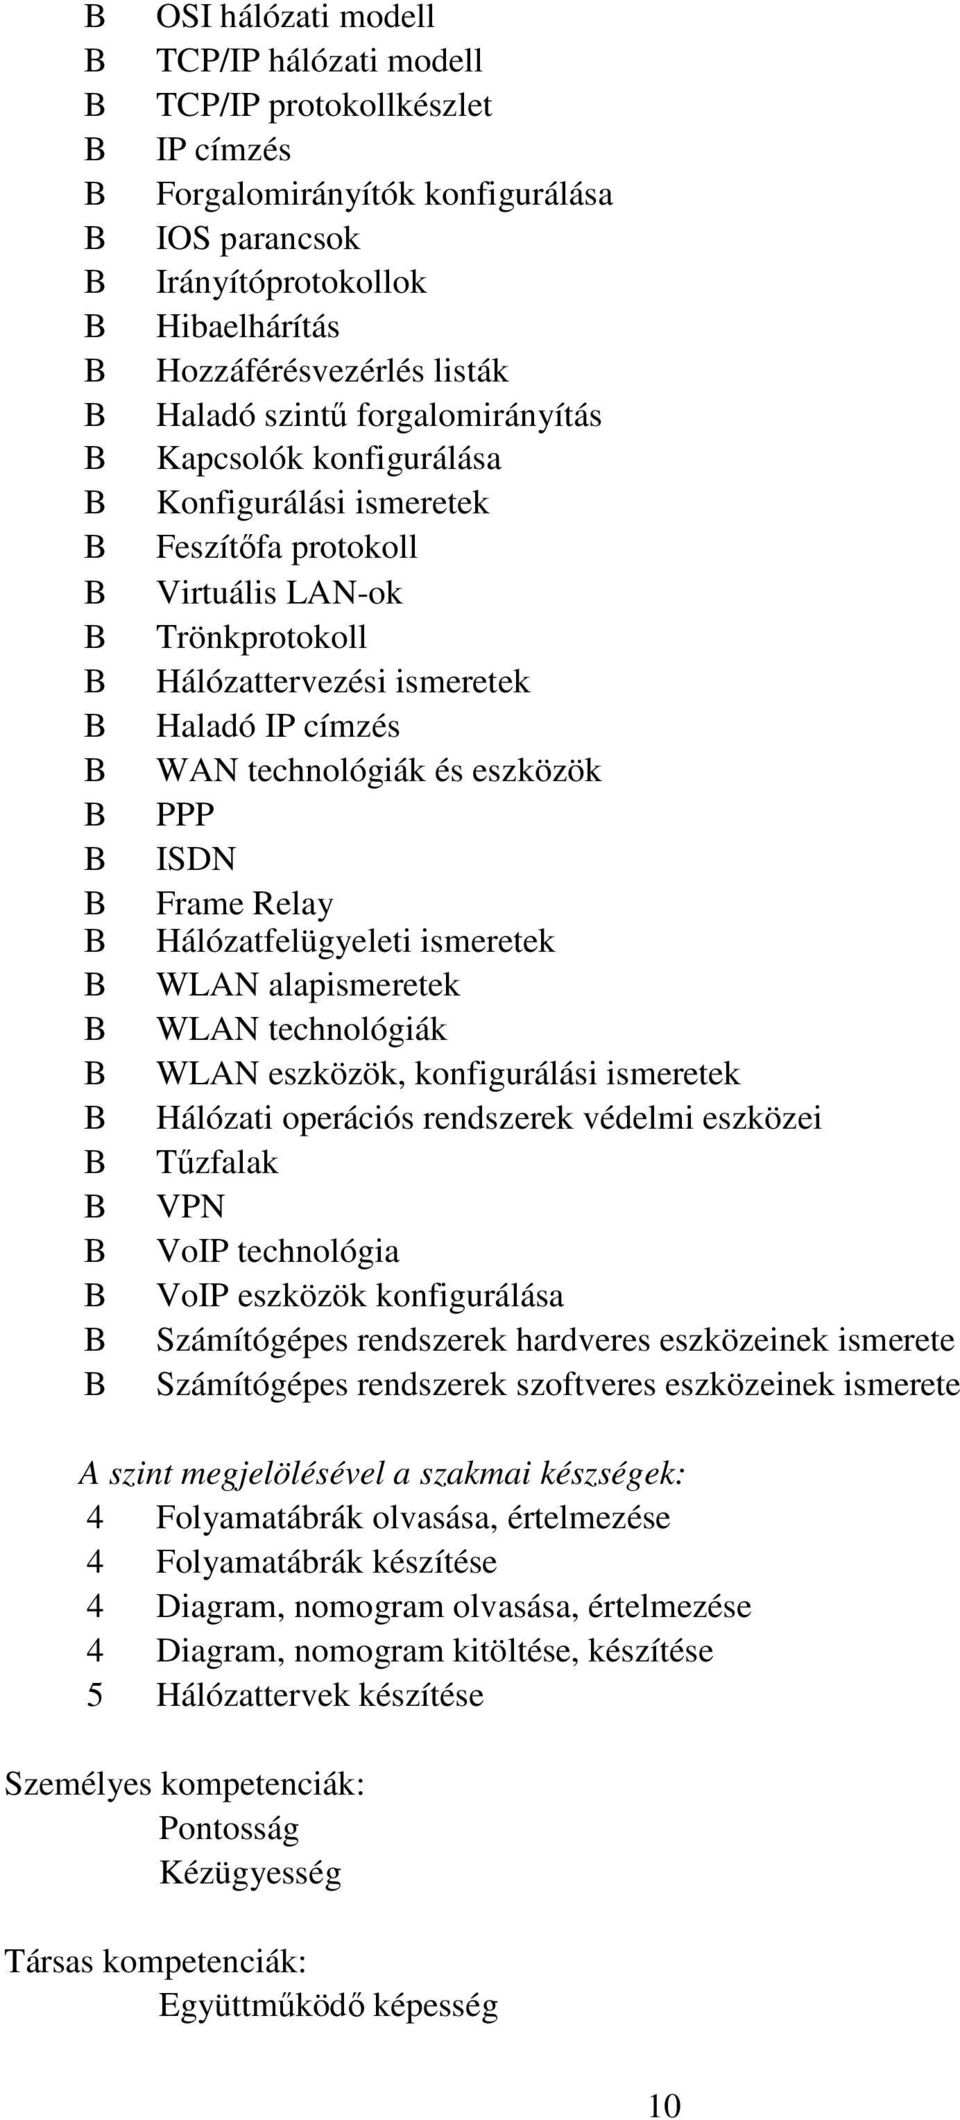 Hálózattervezési ismeretek Haladó IP címzés WAN technológiák és eszközök PPP ISDN Frame Relay Hálózatfelügyeleti ismeretek WLAN alapismeretek WLAN technológiák WLAN eszközök, konfigurálási ismeretek